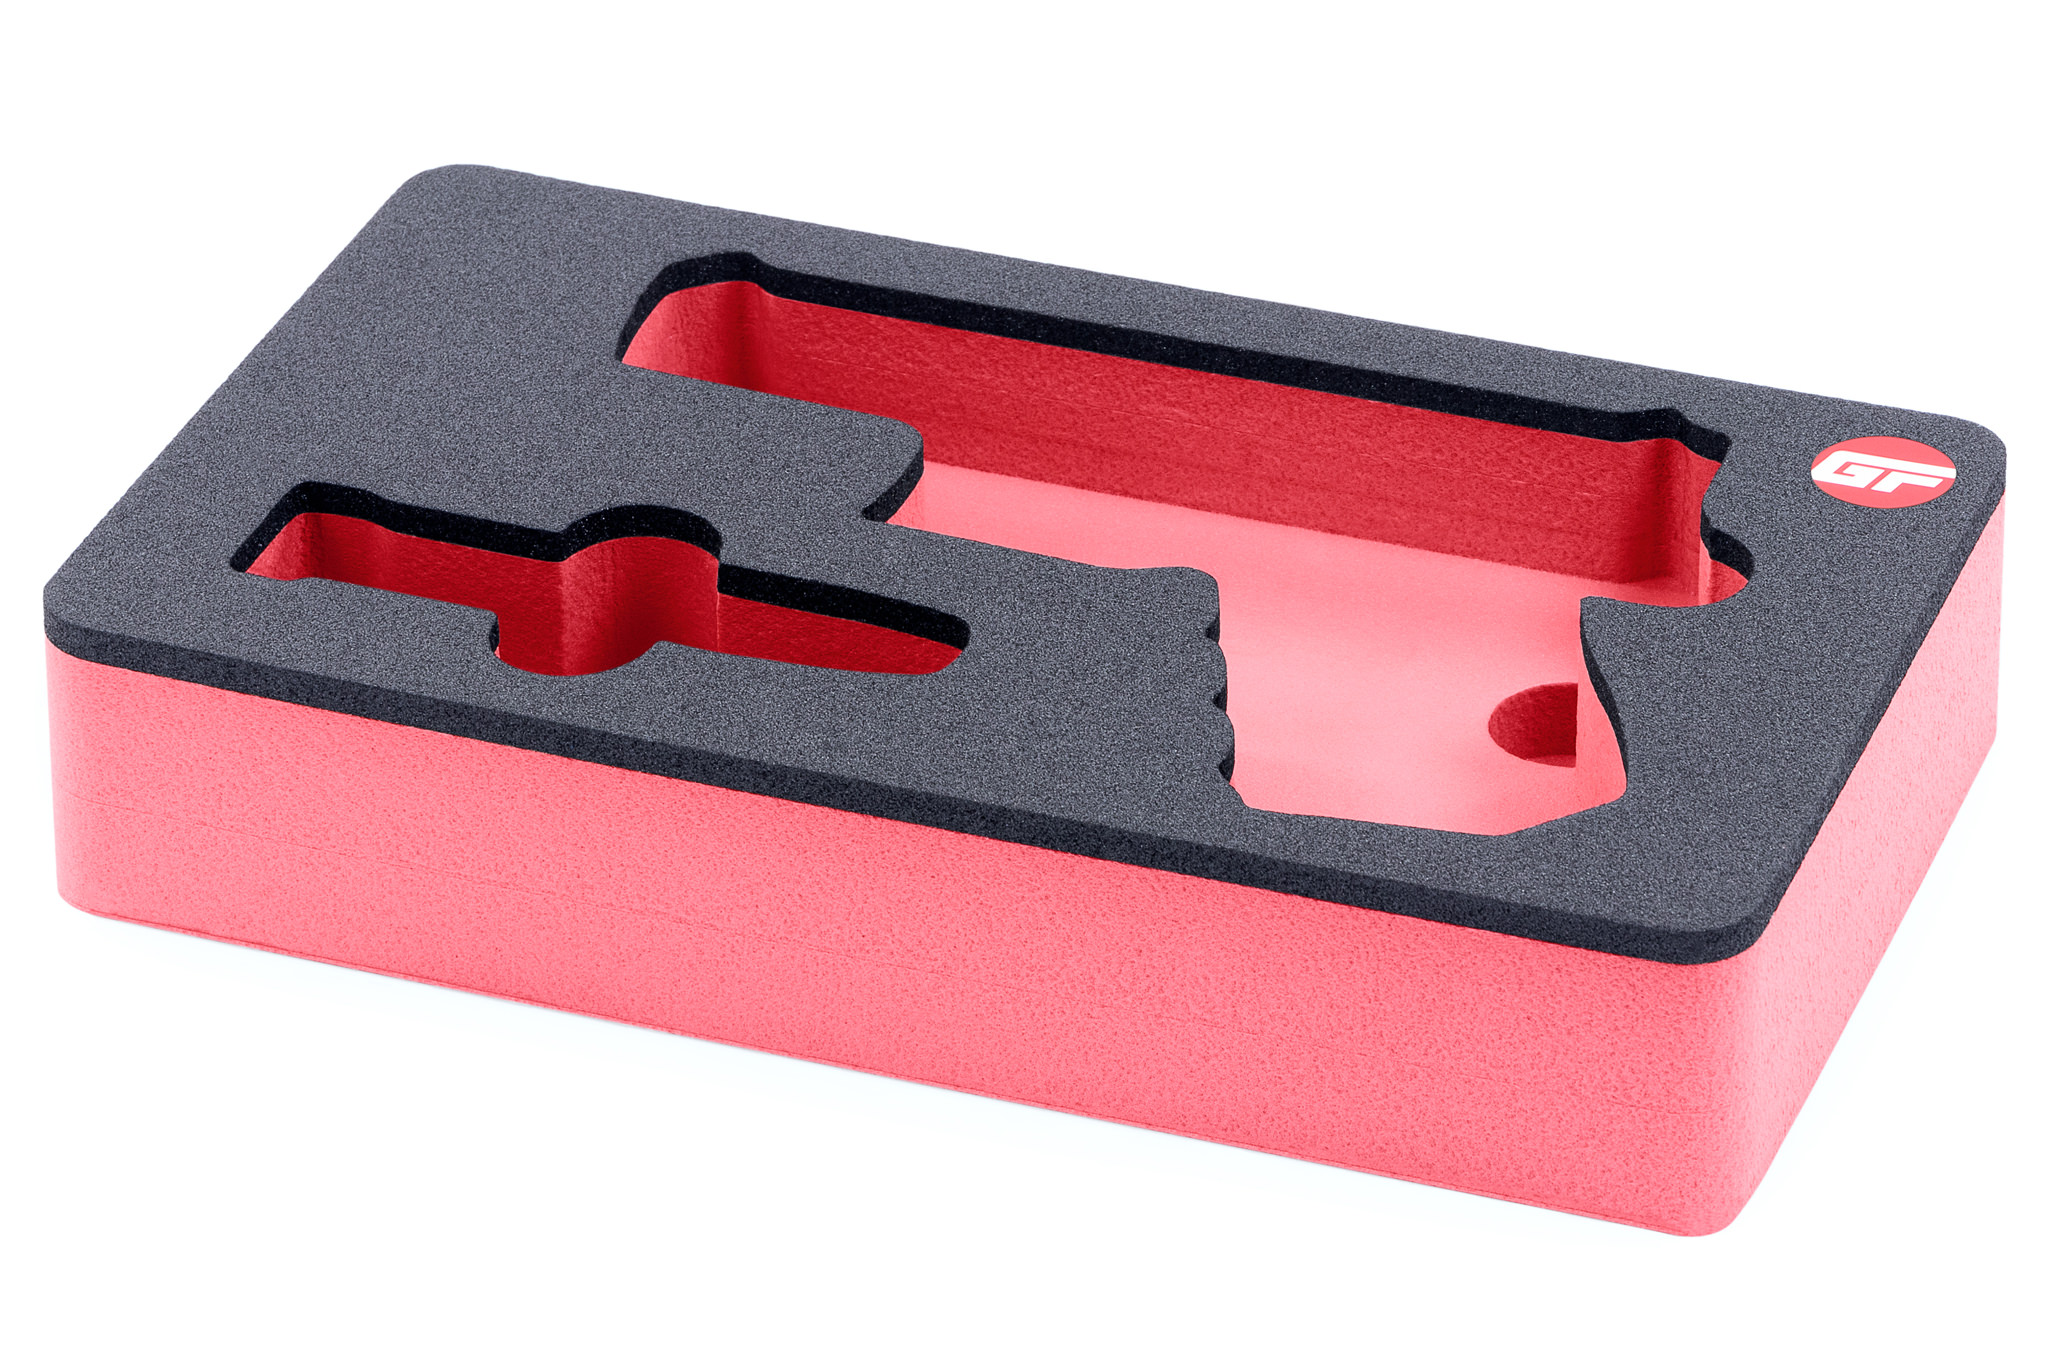 4 mags  nameplate Shooters Solution Pistol handgun foam fits your Pelican 1170 